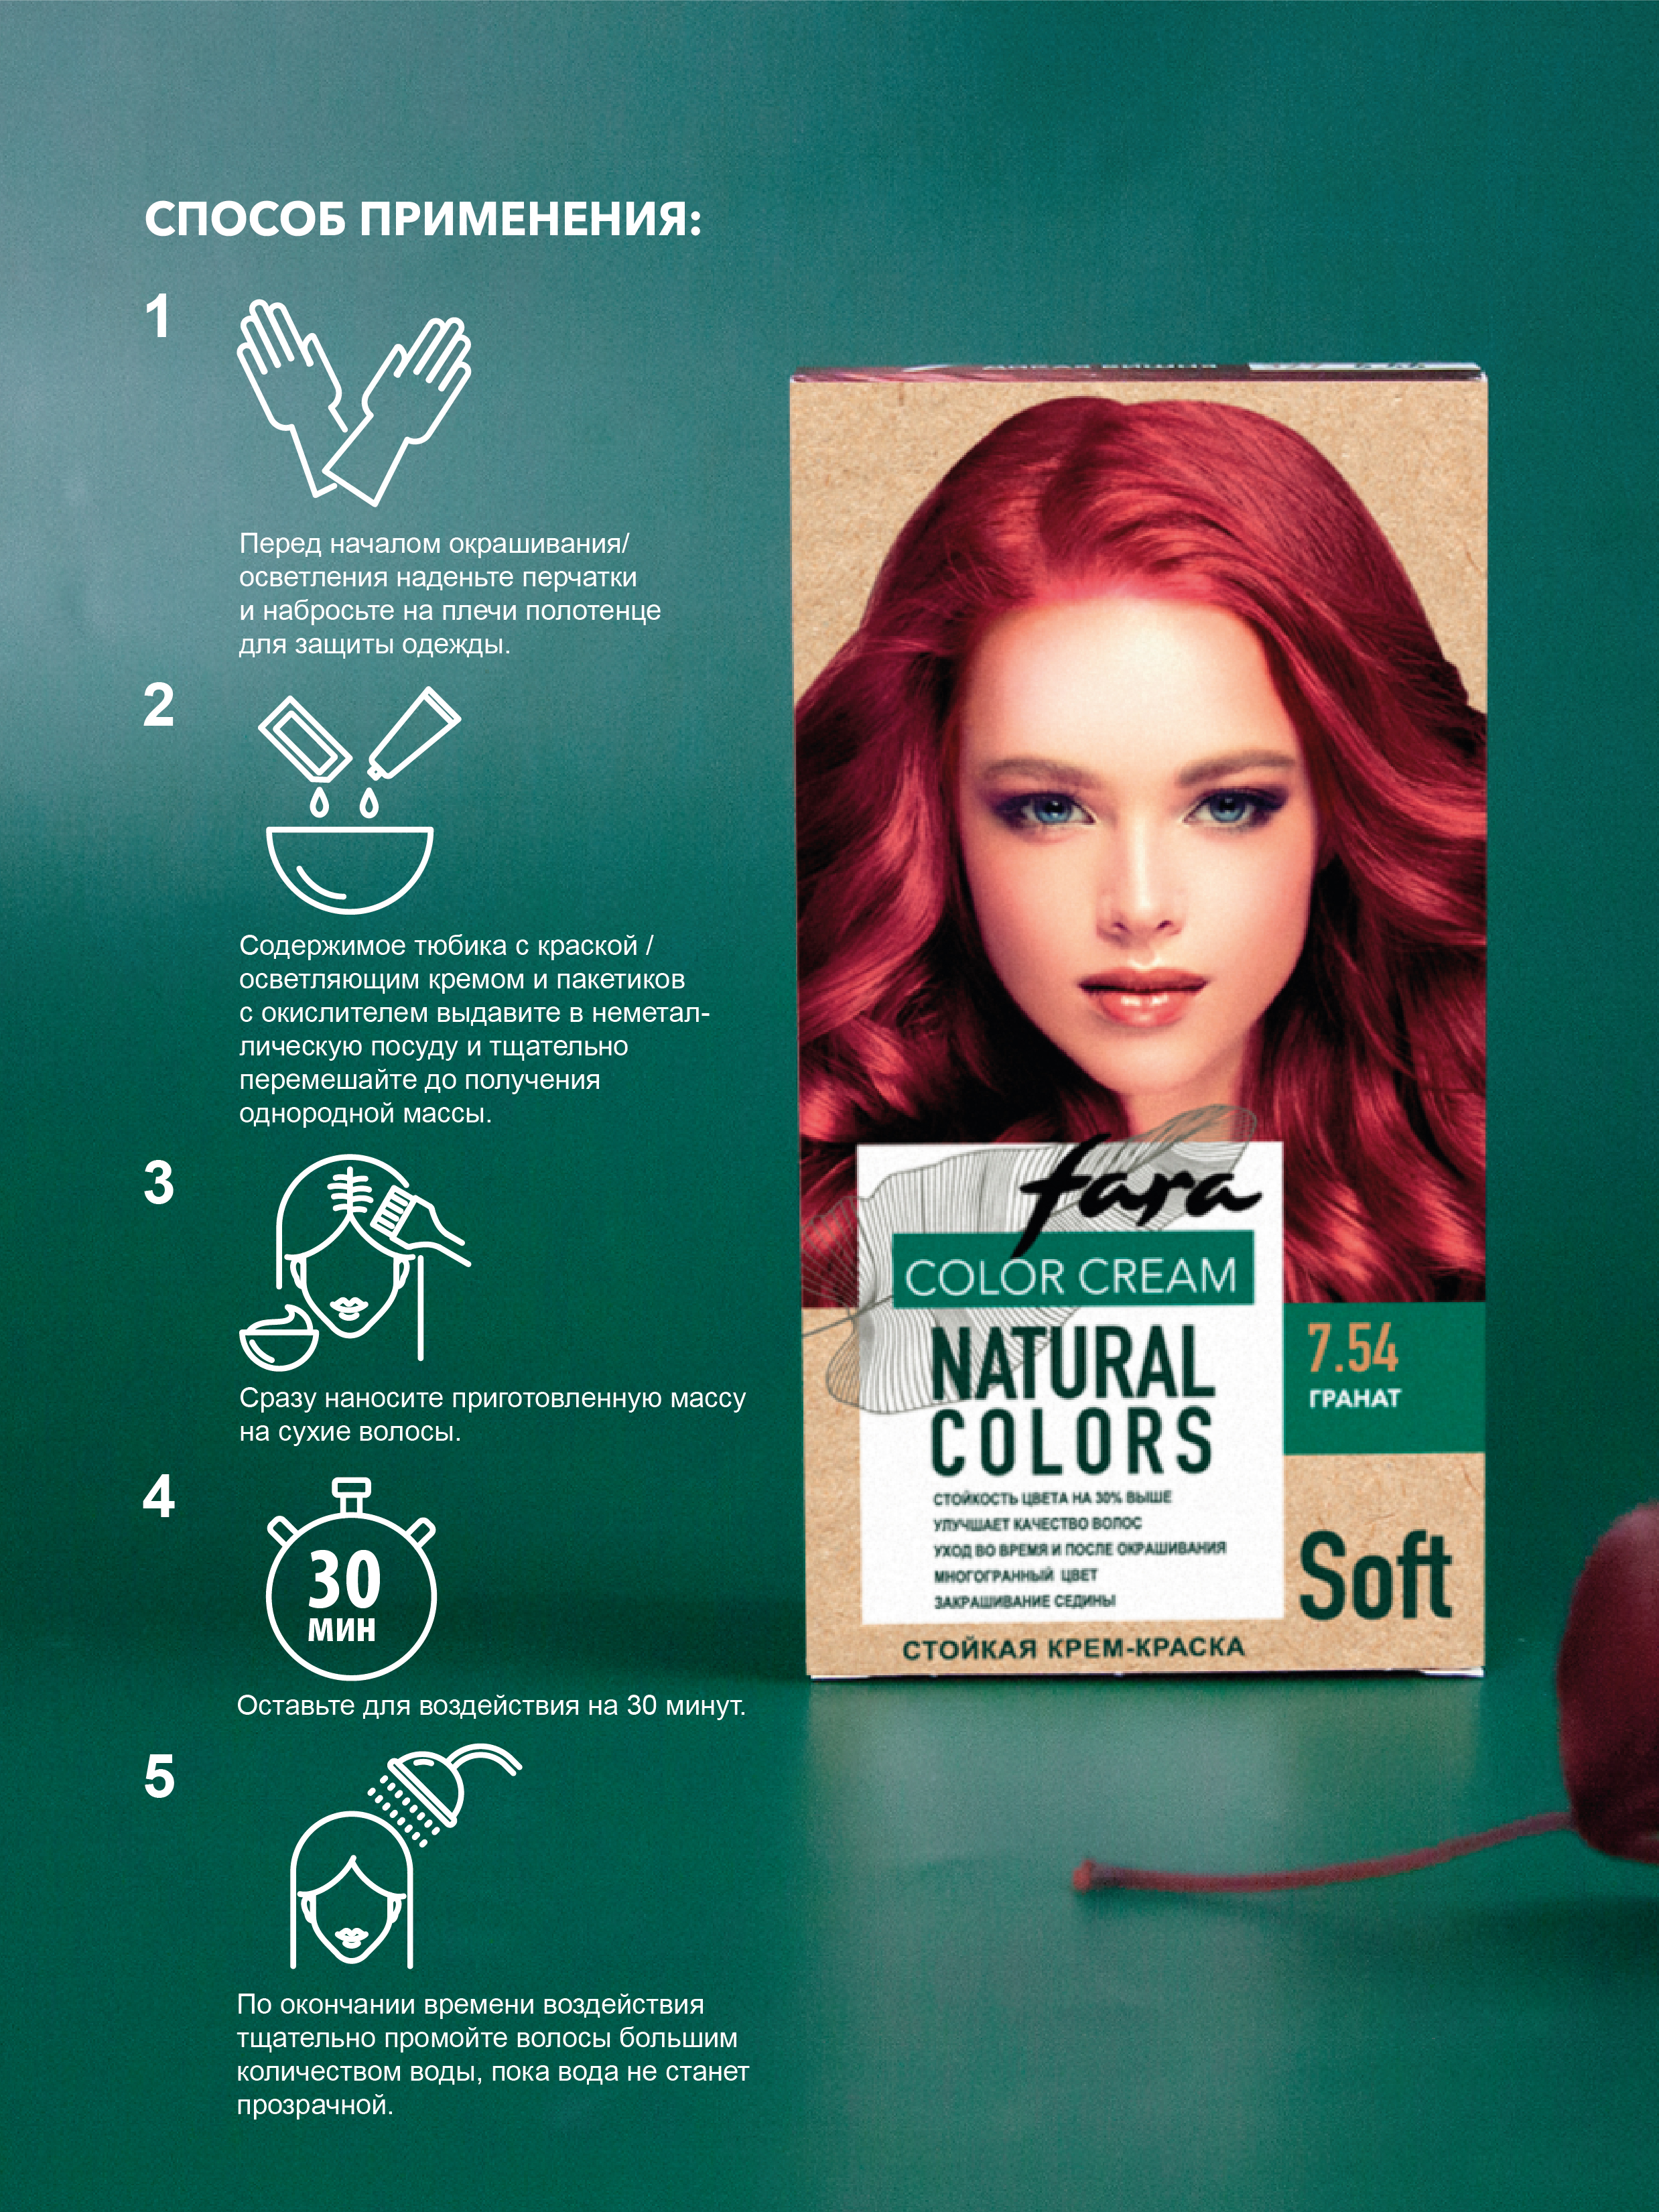 Краска для волос FARA Natural Colors Soft 328 гранат - фото 6